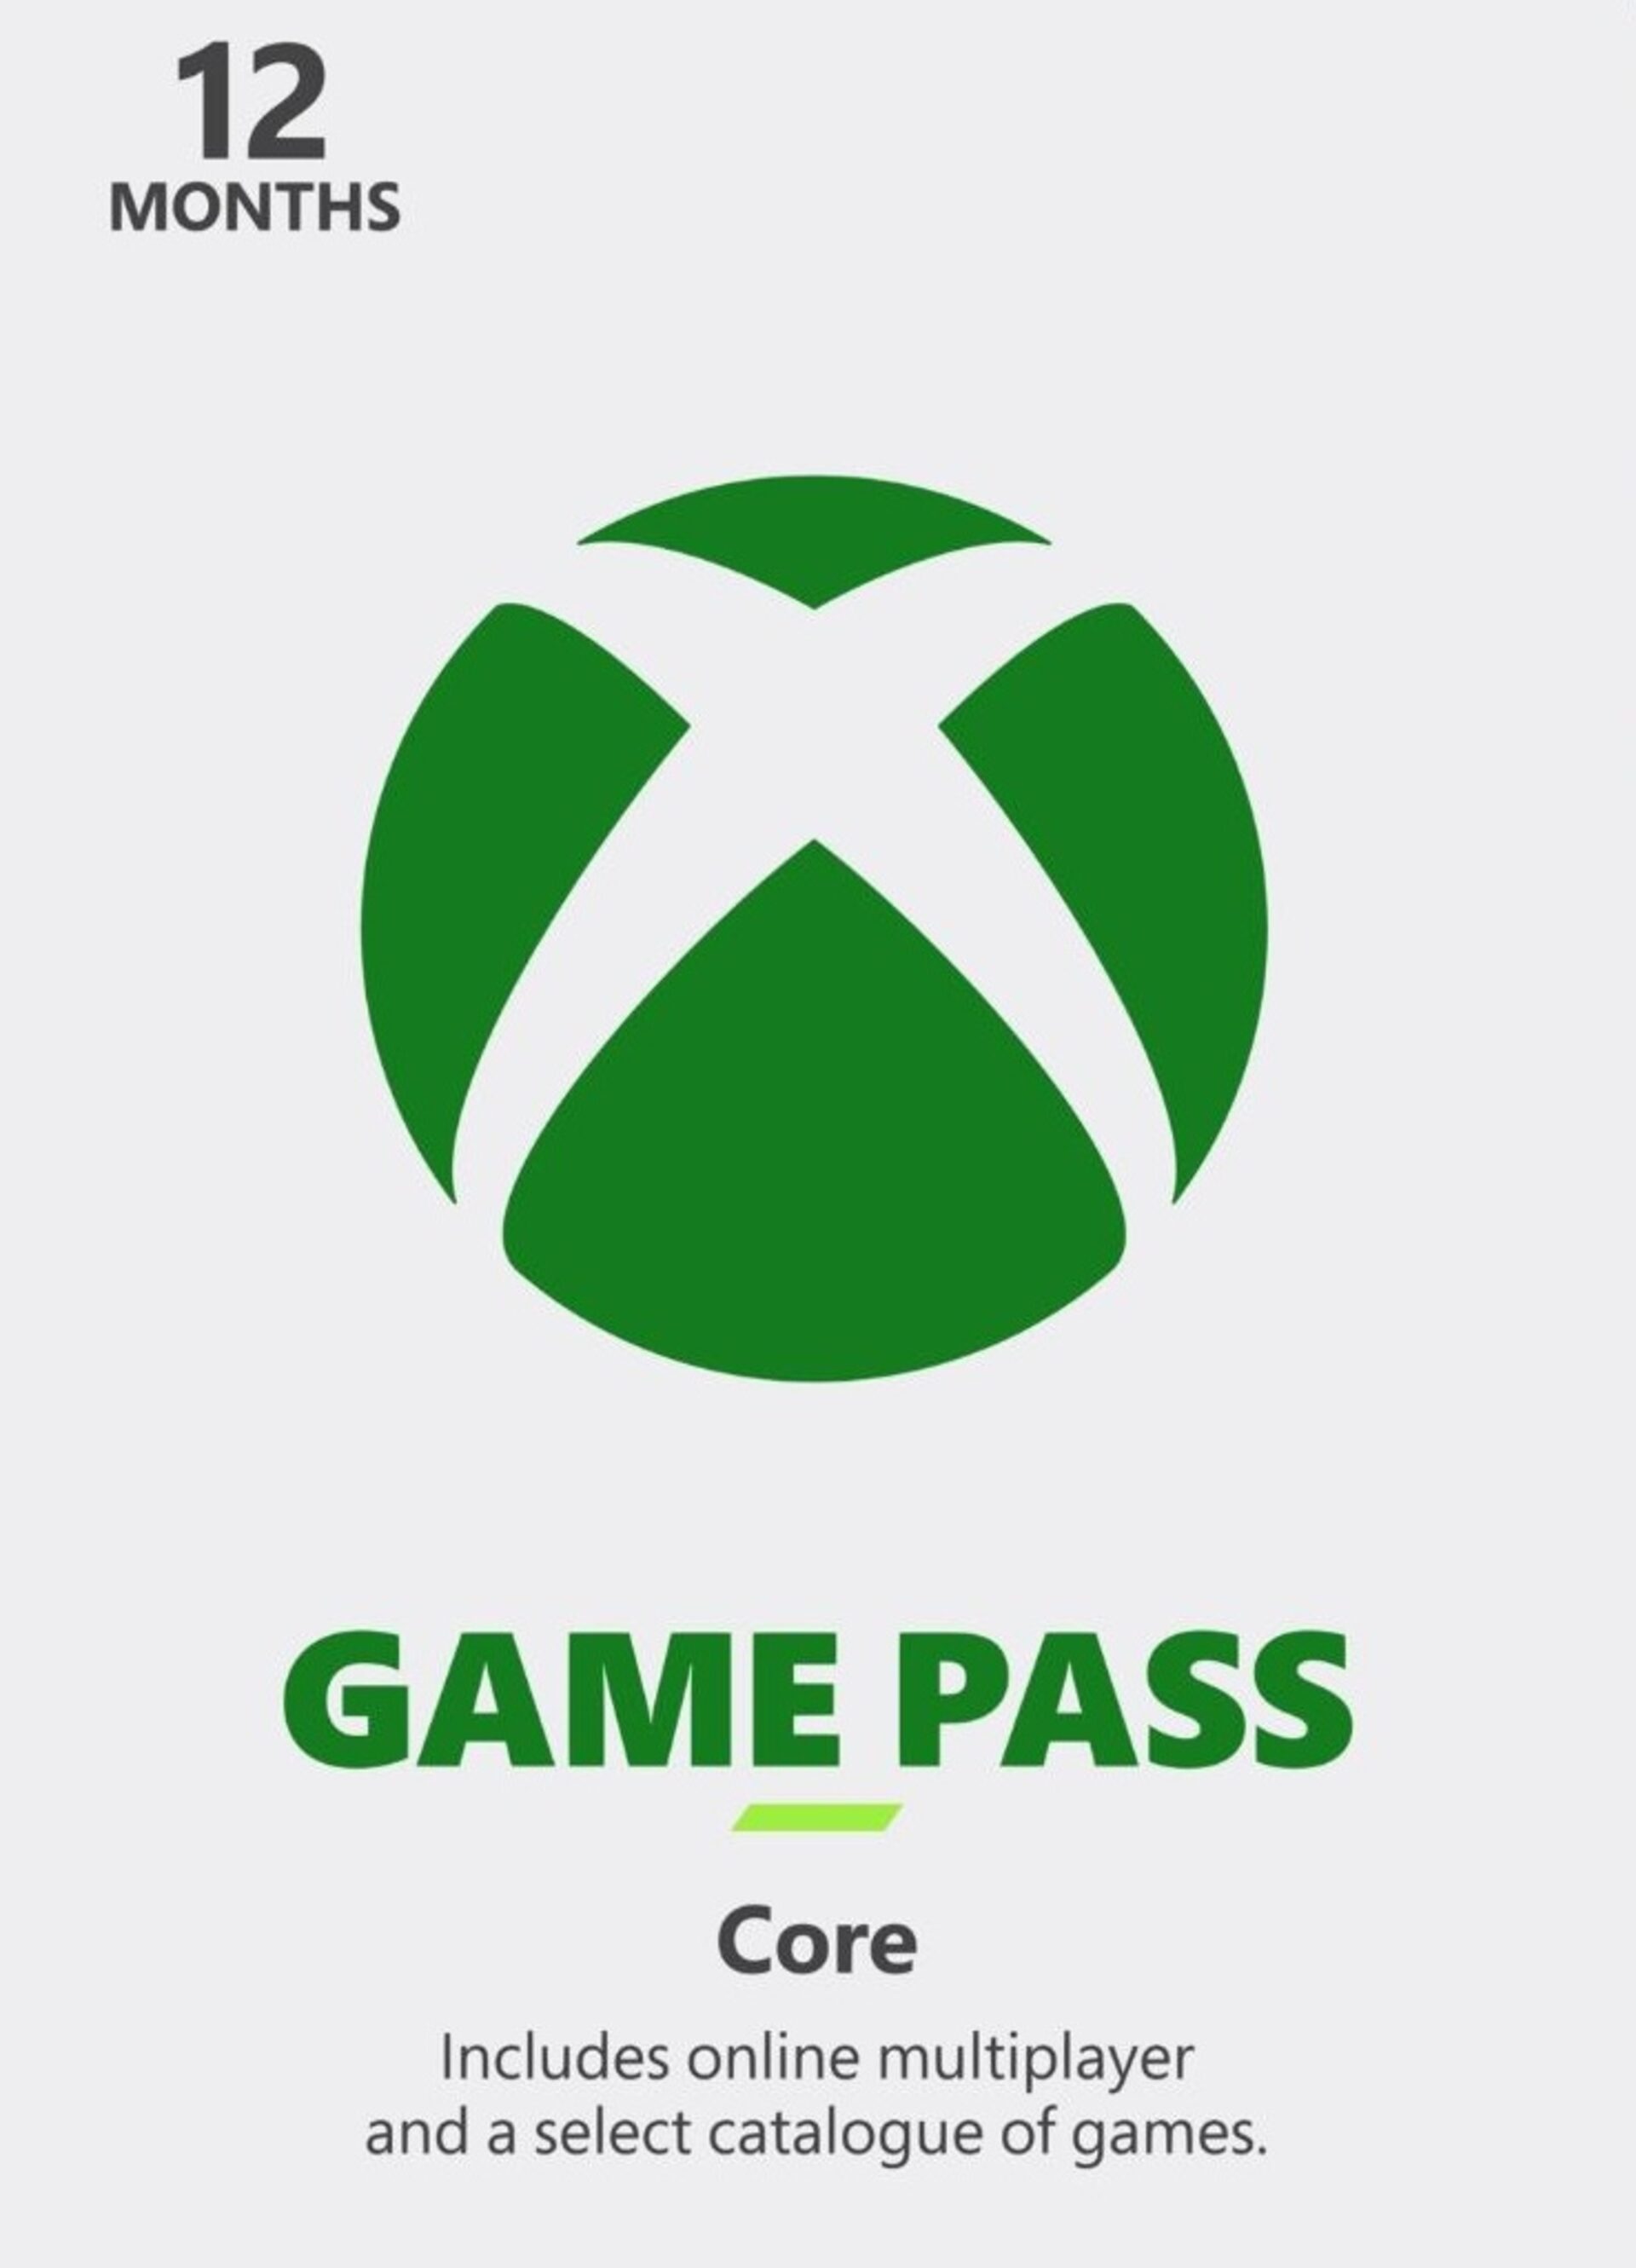 Xbox Game Pass Ultimate, PC, Core - Cheaper Price